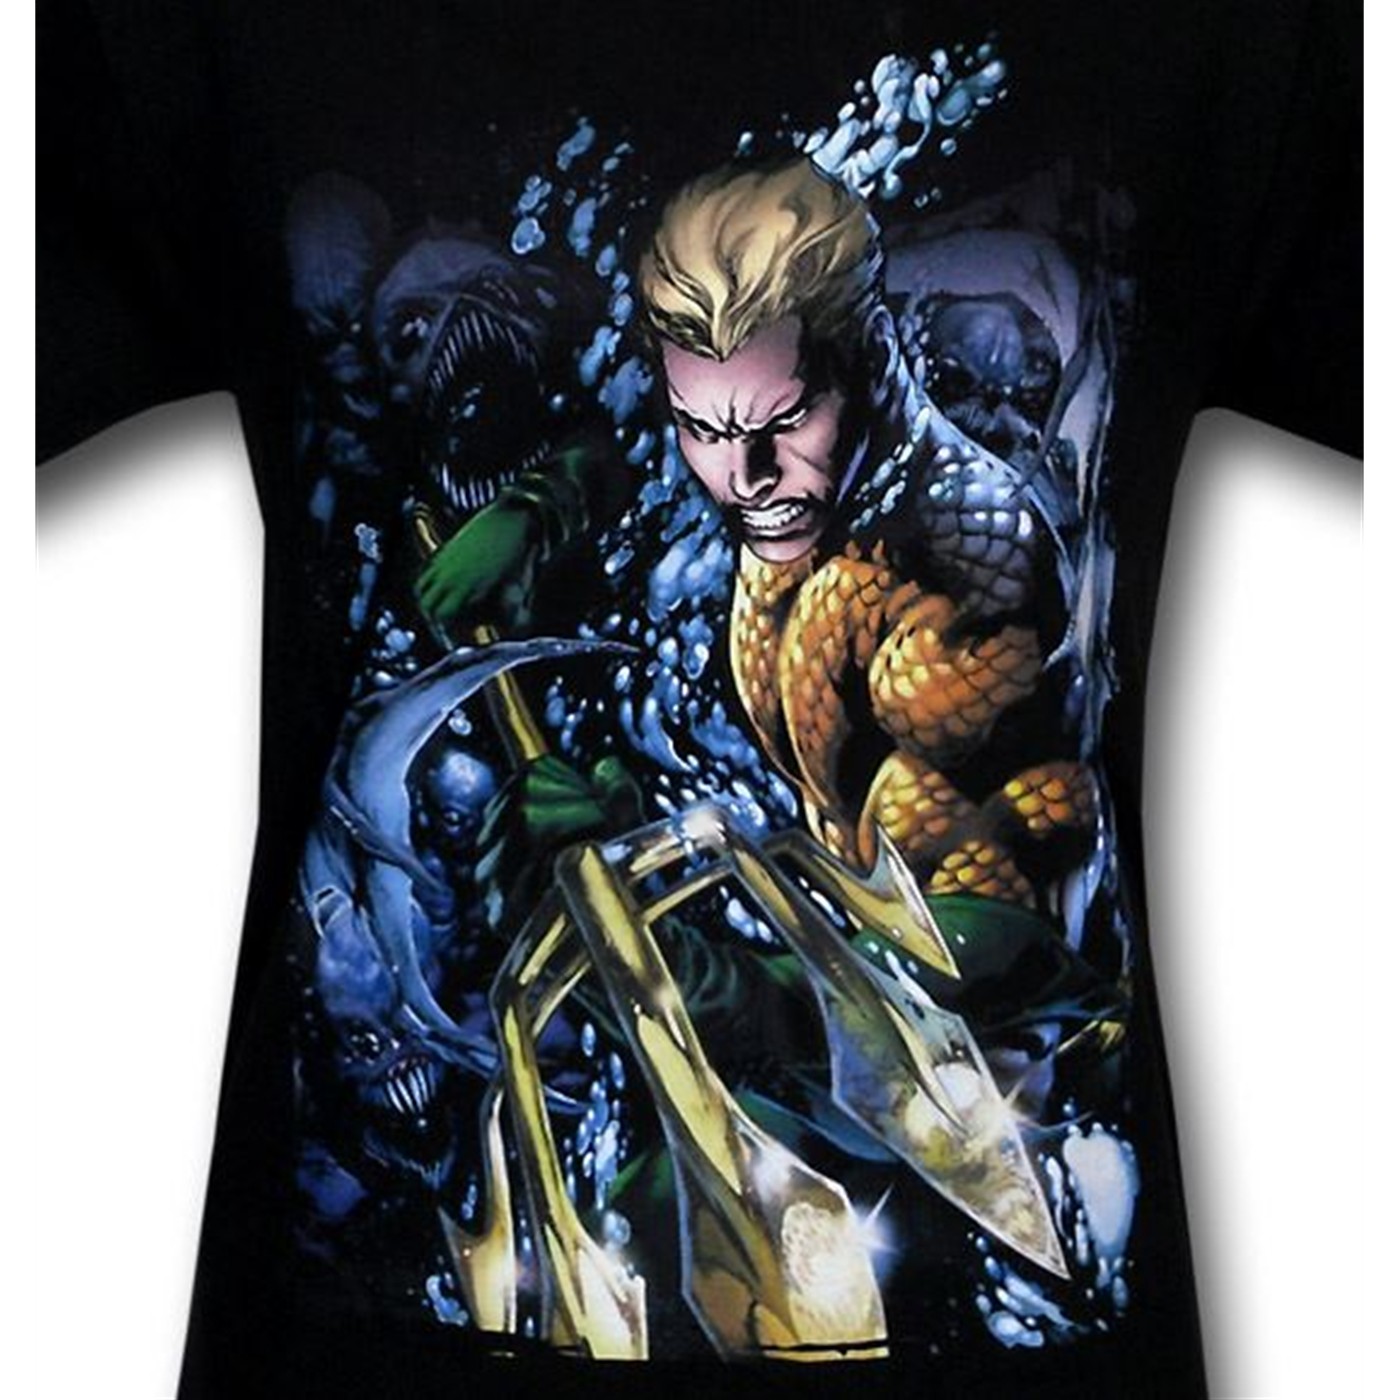 Aquaman New 52 #1 T-Shirt